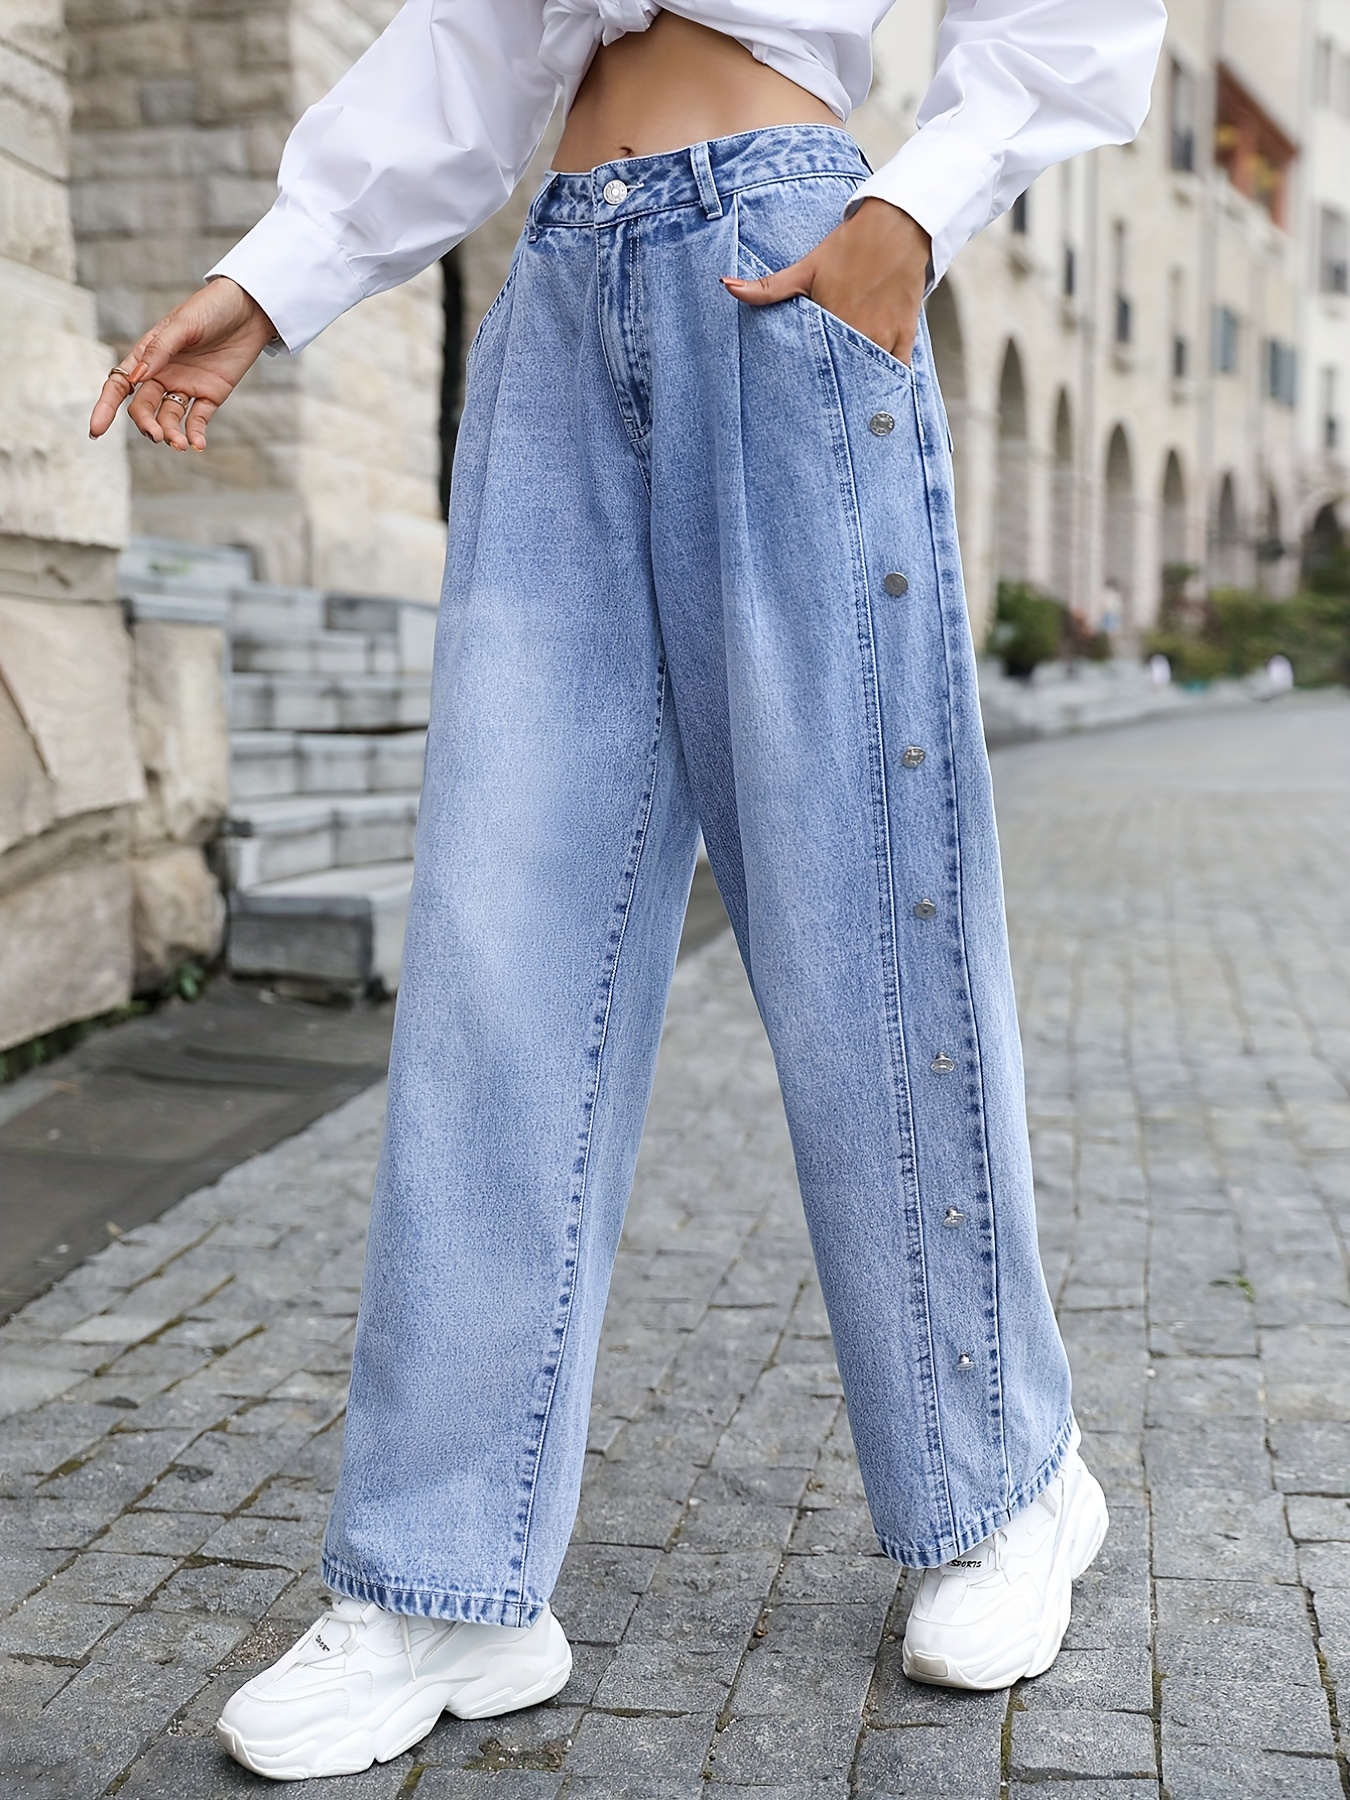 Pantalones de mezclilla para mujer estilo tipo de mujer jeans